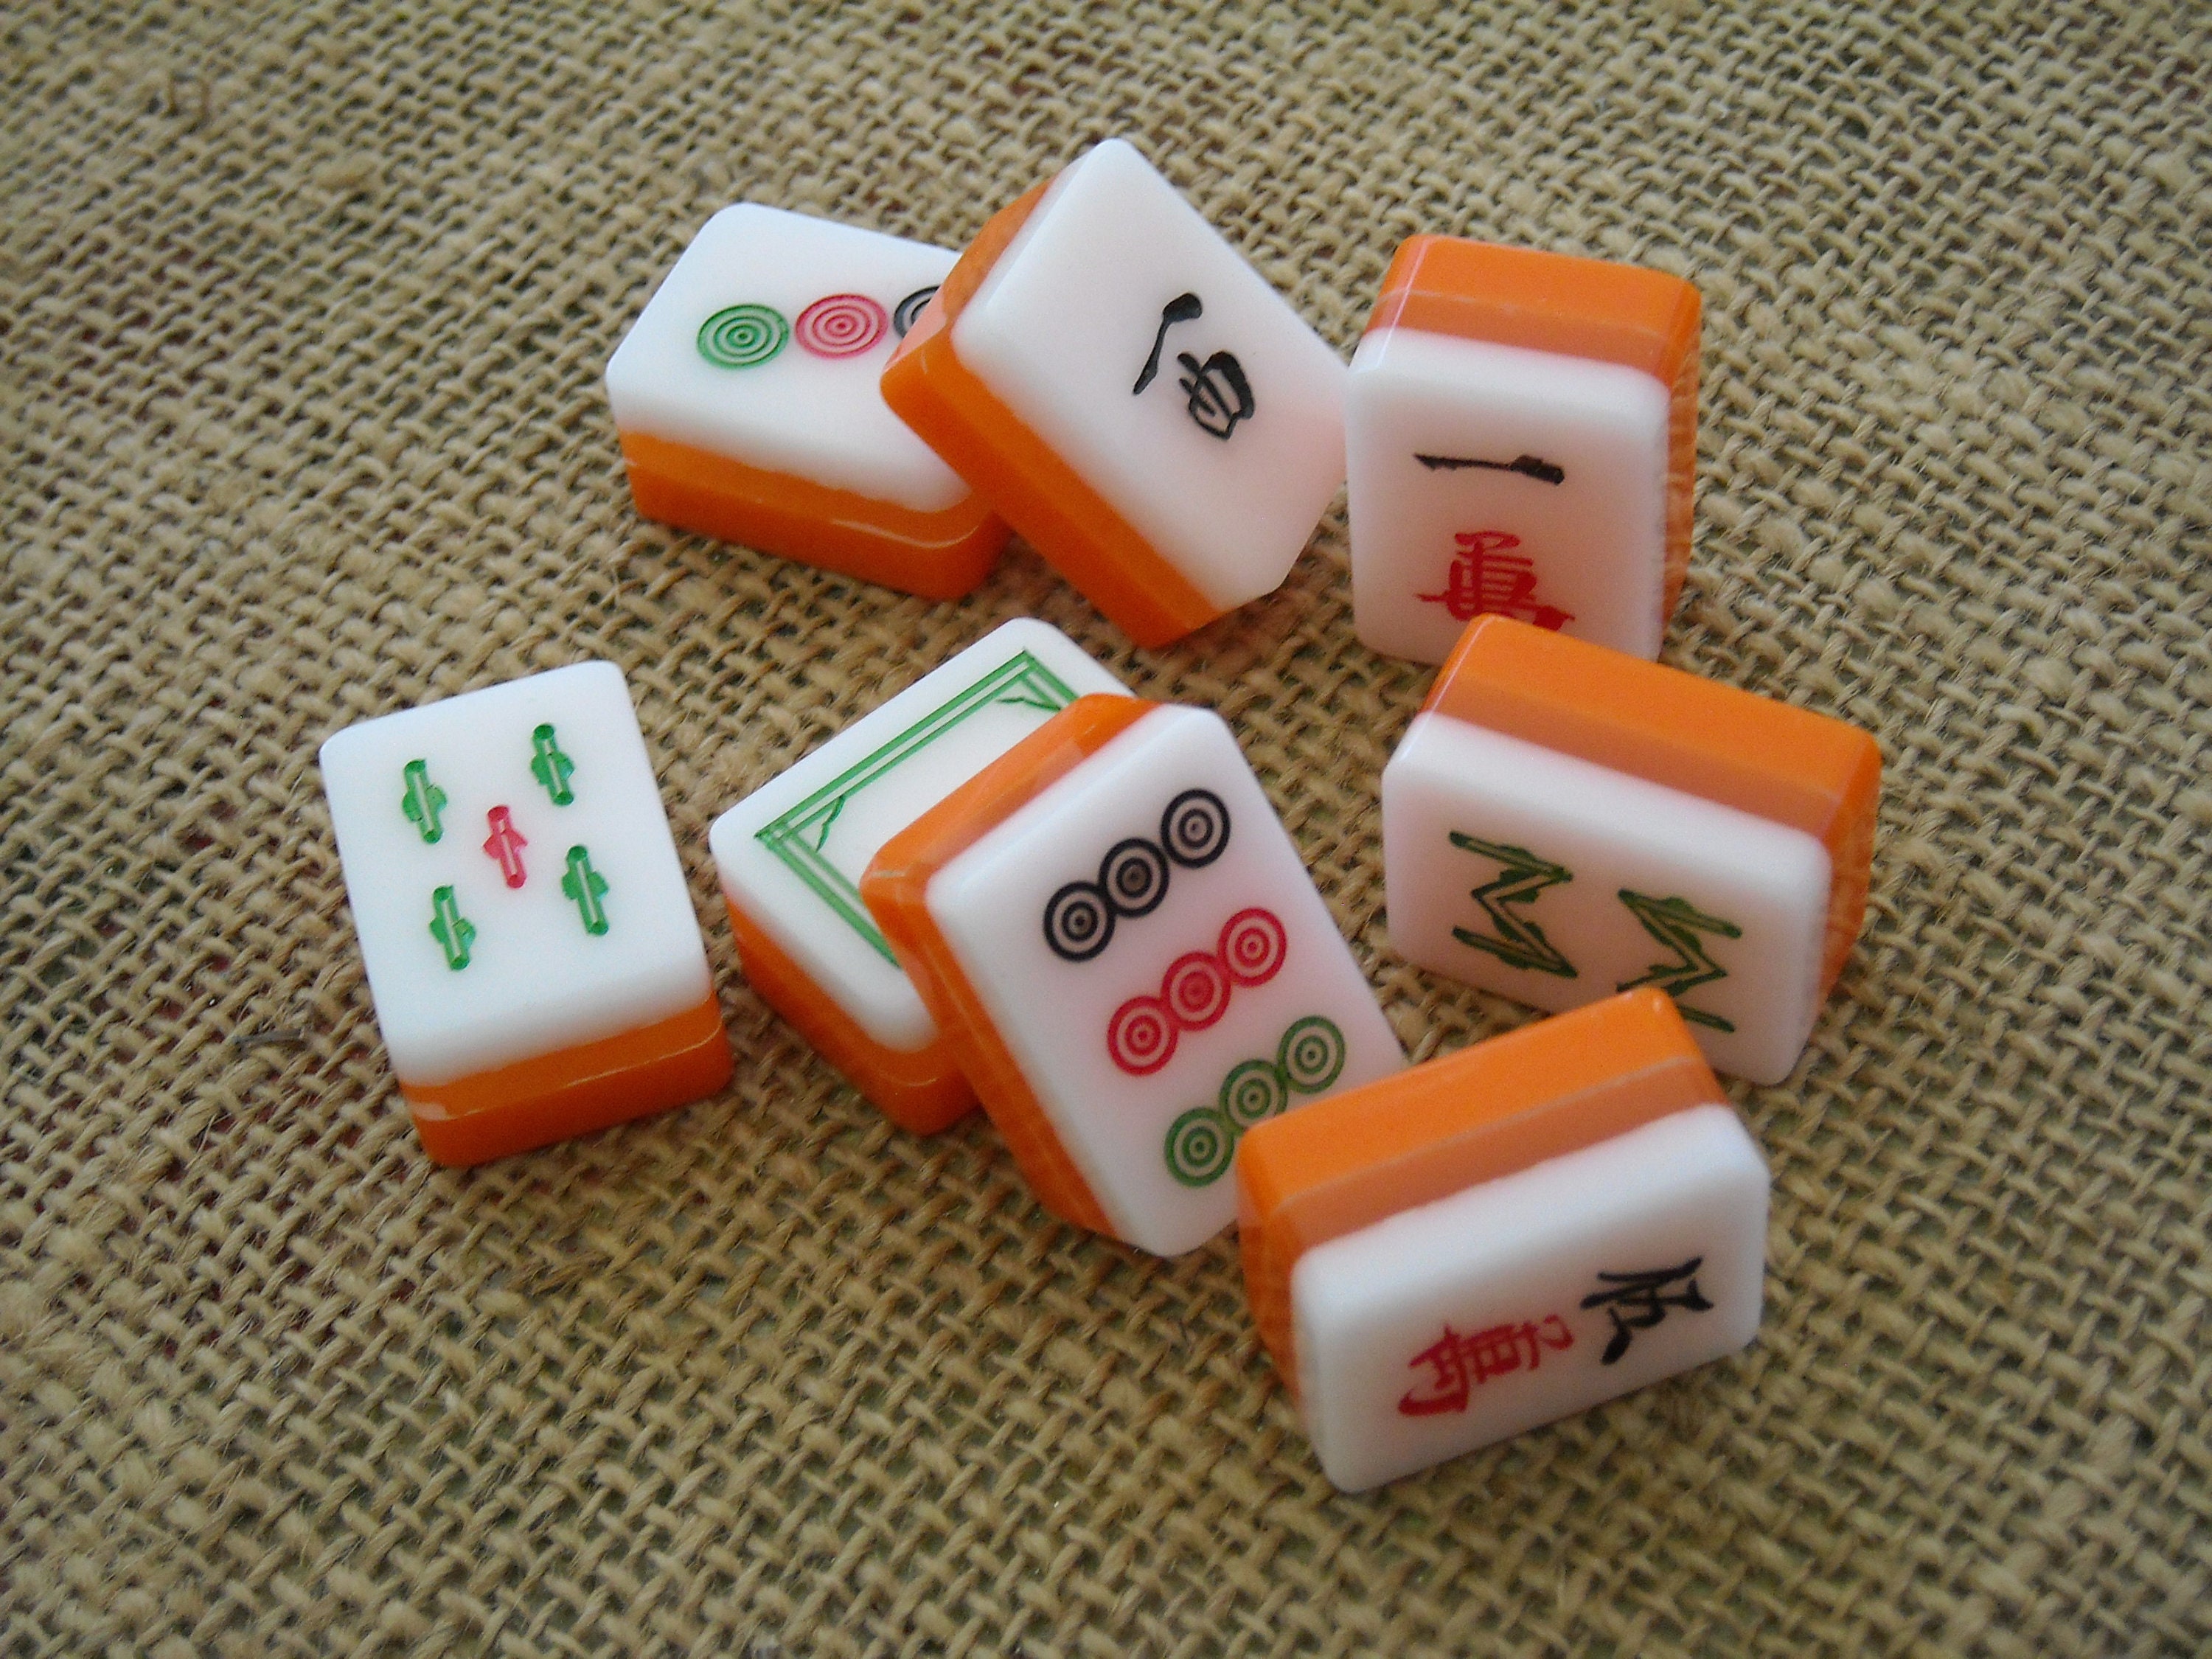 Game pieces cardboard mahjong tile pieces lot scrapbooking craft supplies